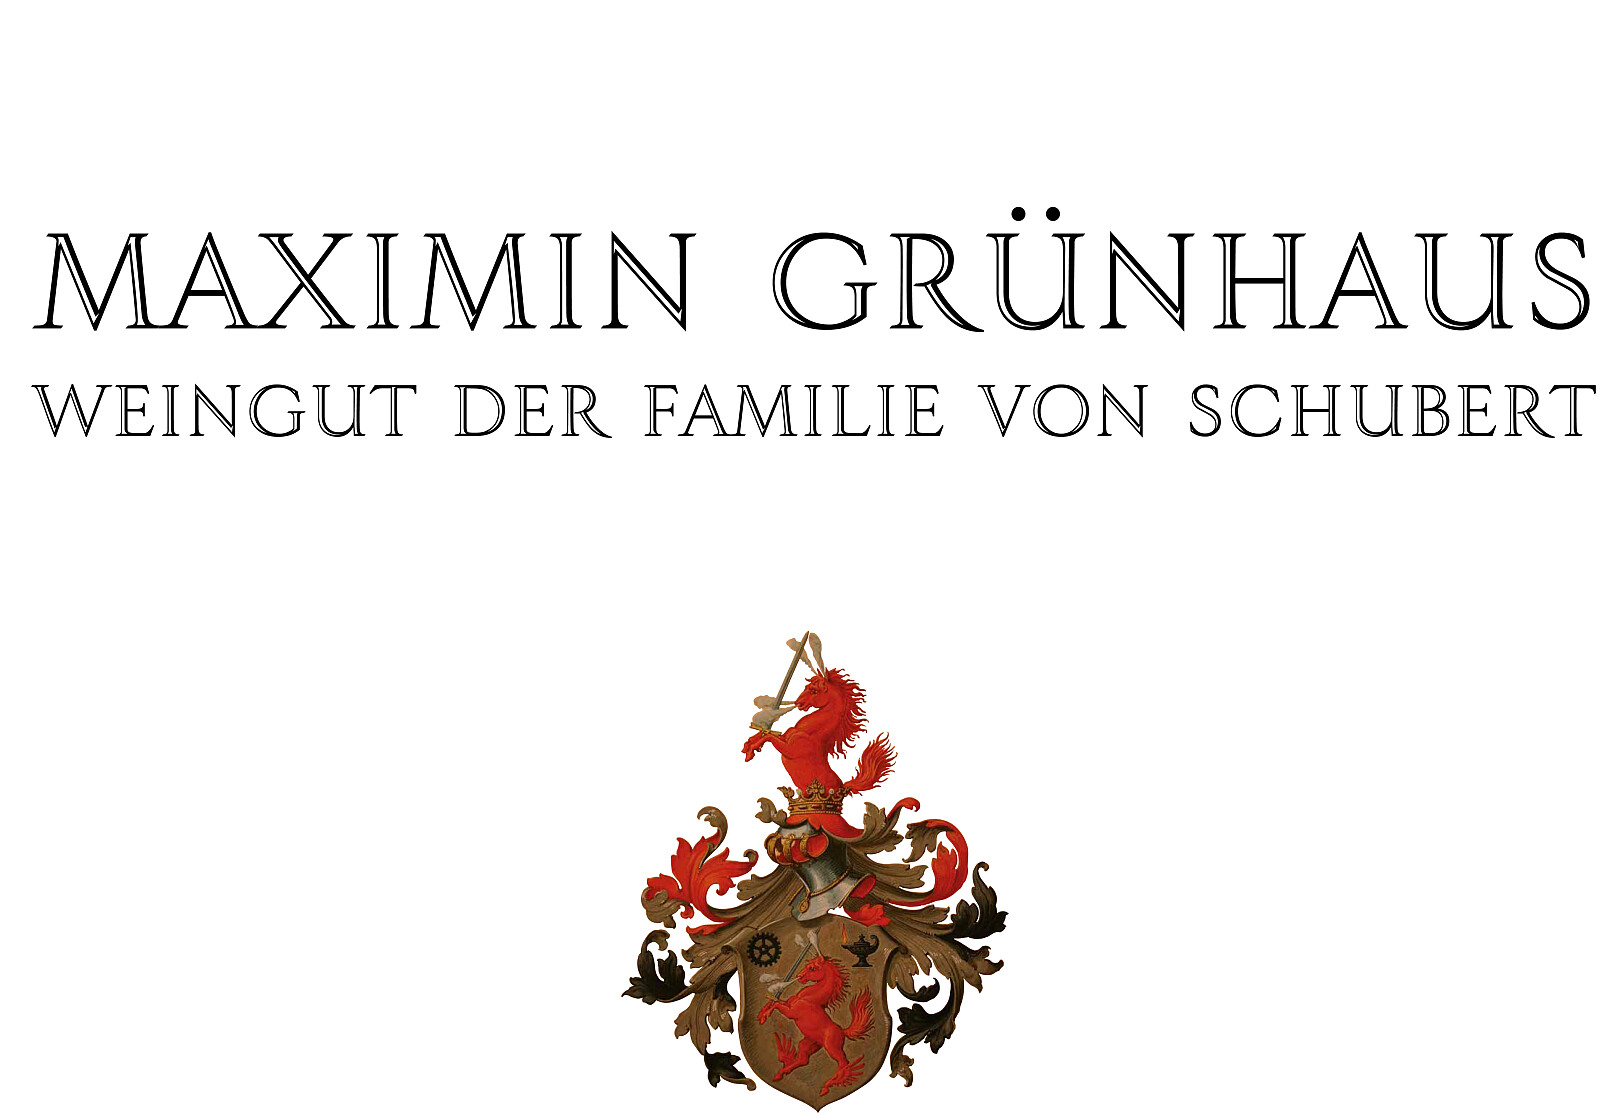 Grunhaus logo.jpg [2.33 MB]